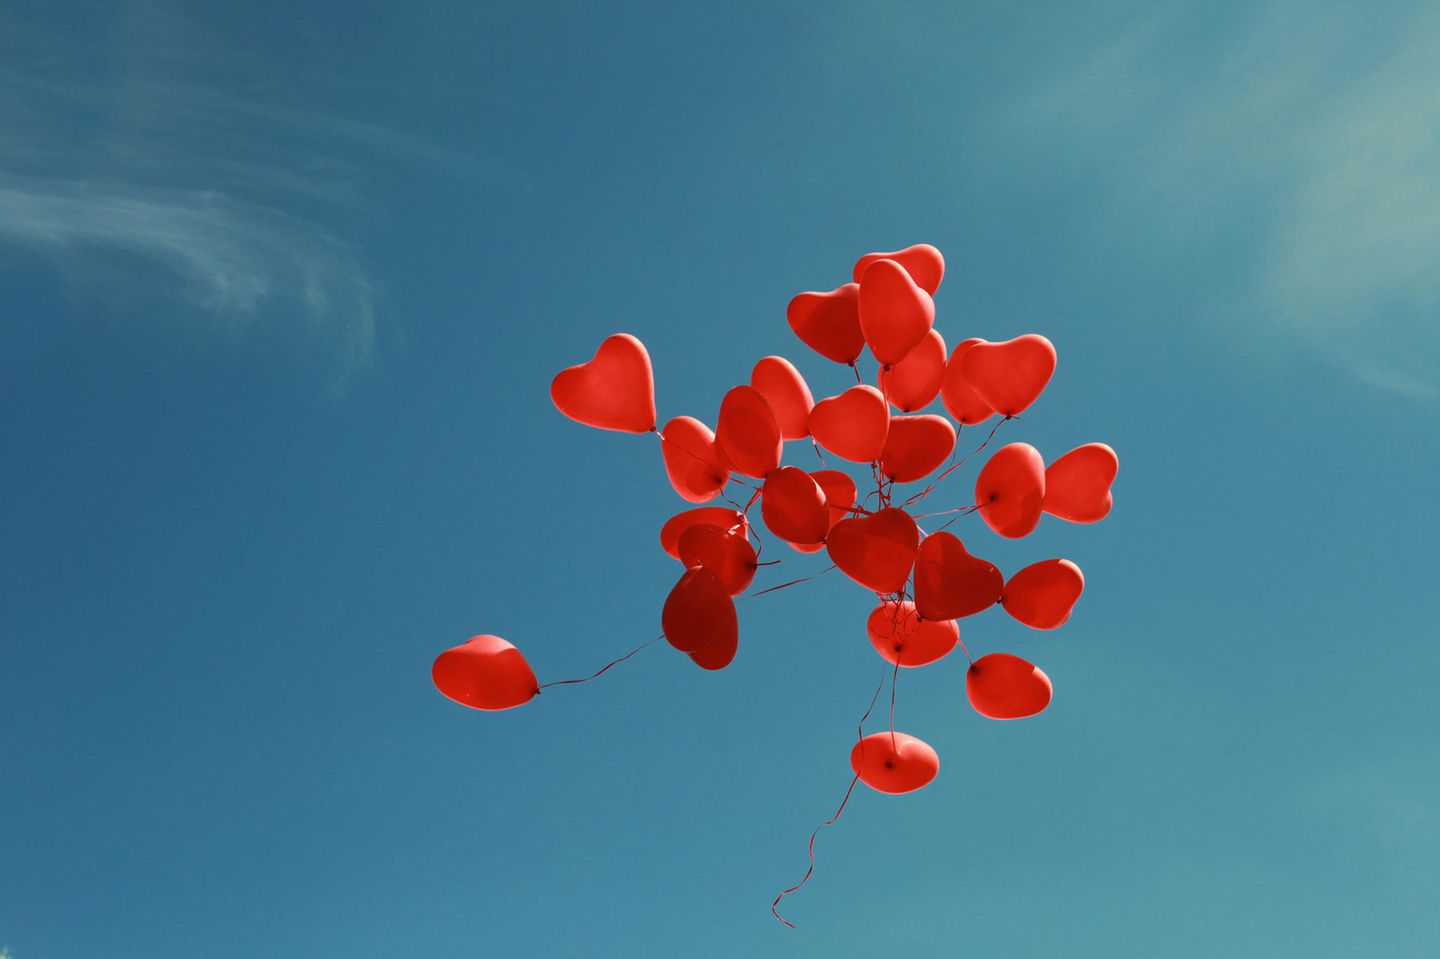 Offene Liebe: Rote Herzchen-Luftballons fliegen in den blauen Himmel